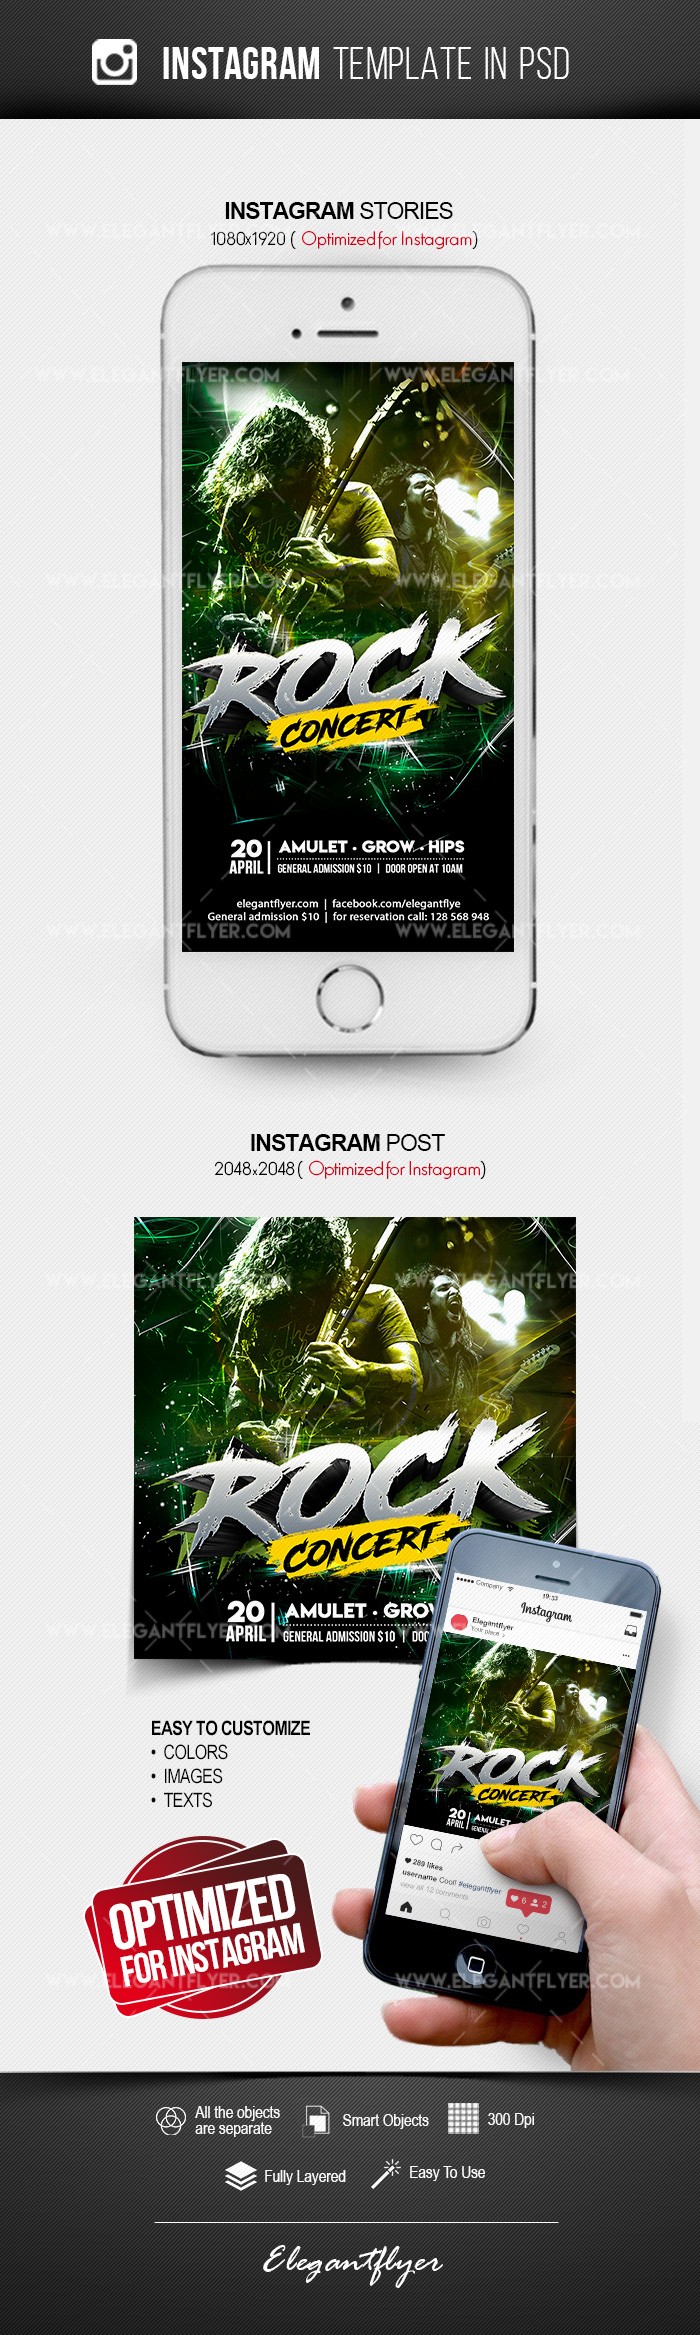 Rock Concert Instagram by ElegantFlyer